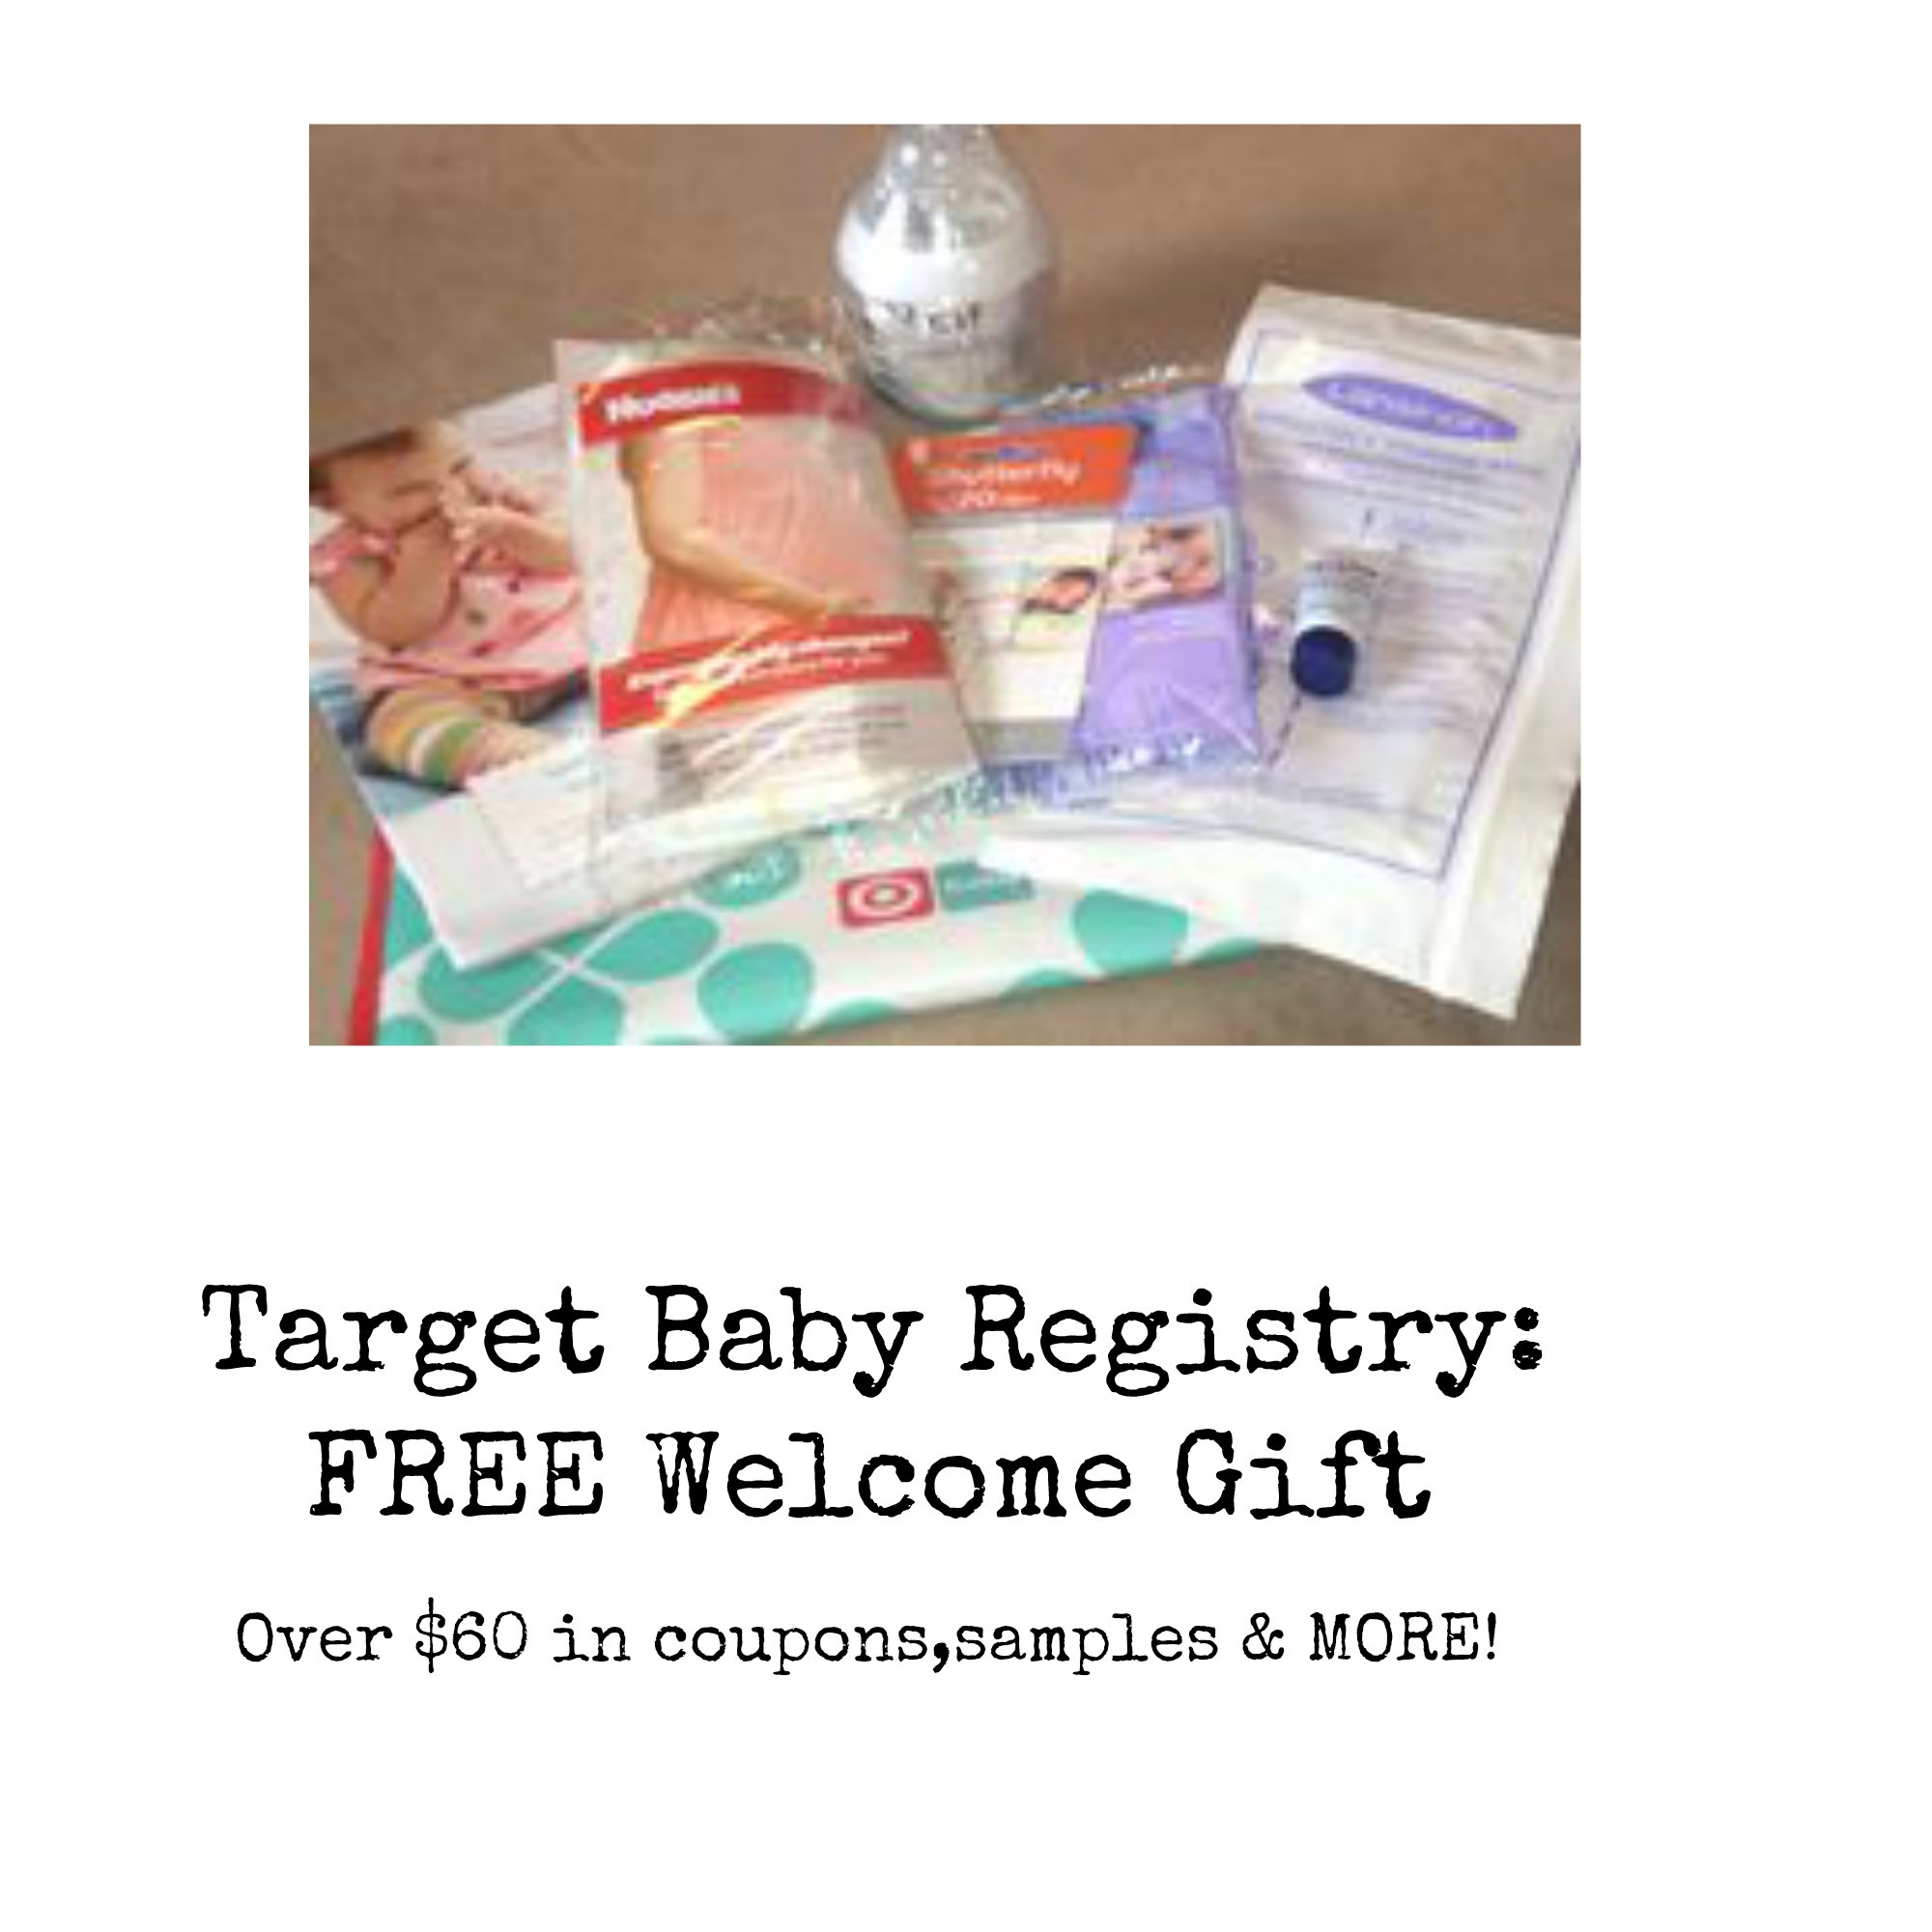 Target Gift Registry For Baby
 Tar Baby Registry FREE Wel e Gift Over $60 Value